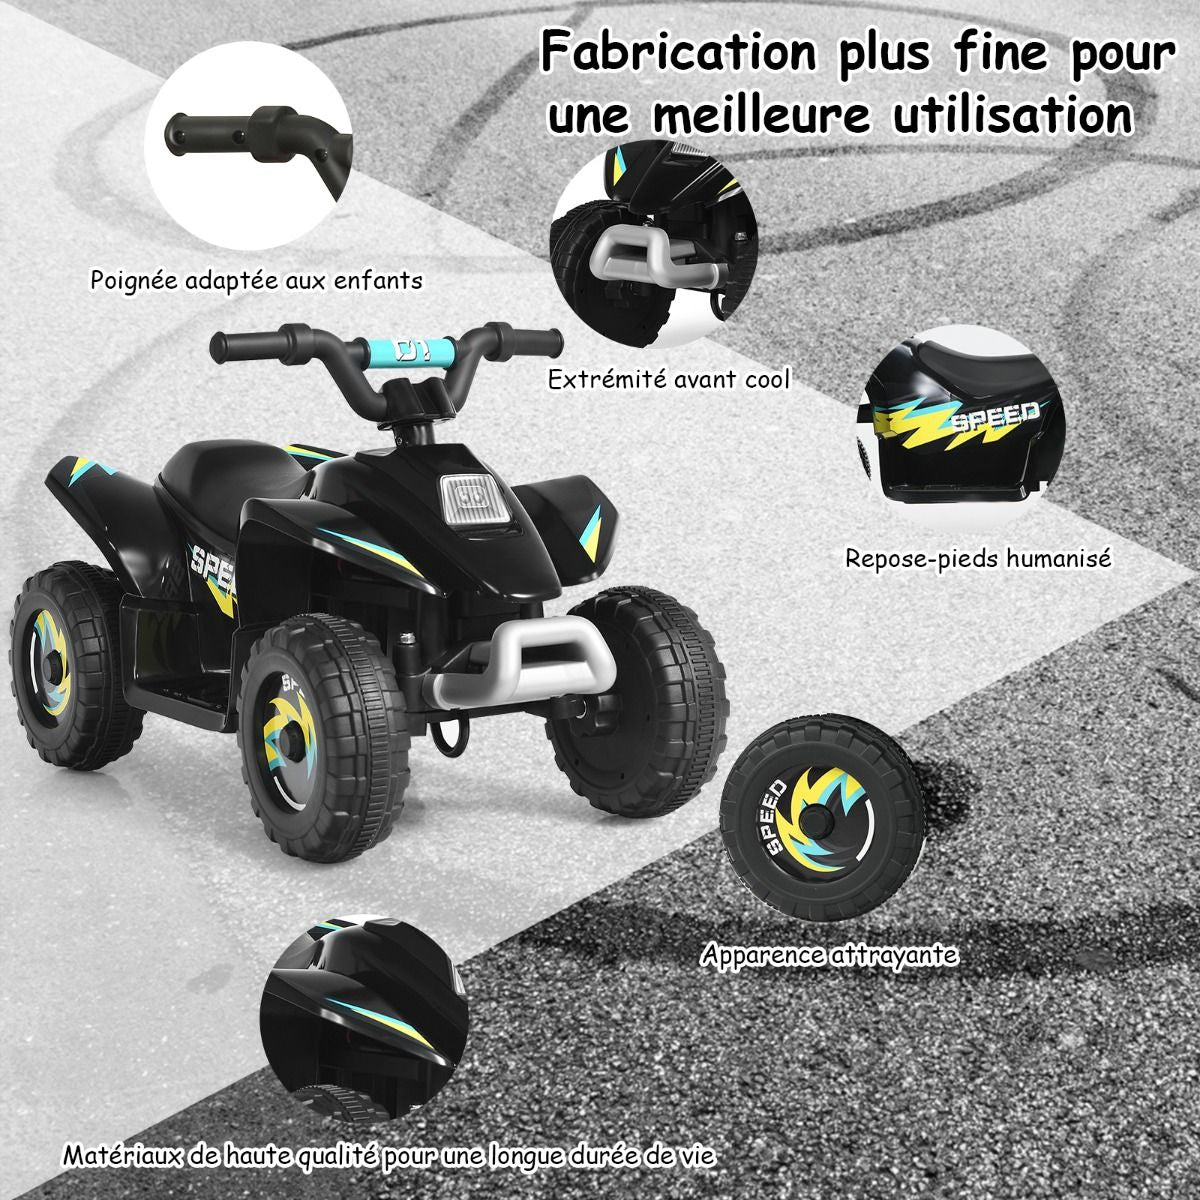 Quad Buggy Electrique Pour Enfant 6 V 4,5 Km-H MAX Voiture Pour Enfants De 3 Ans+ Noir